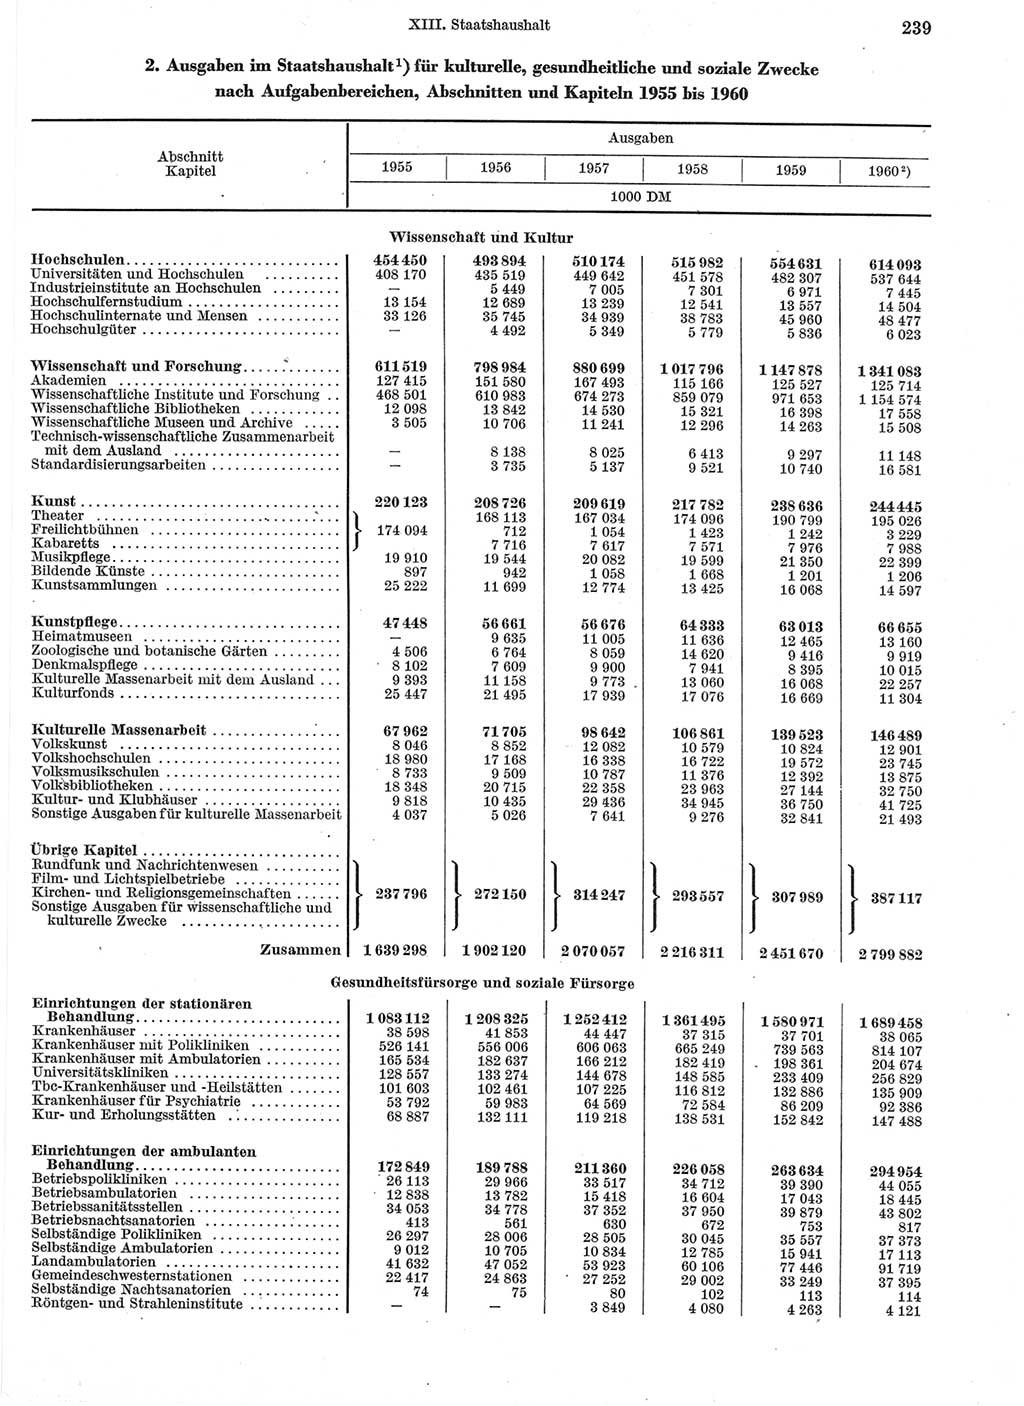 Statistisches Jahrbuch der Deutschen Demokratischen Republik (DDR) 1960-1961, Seite 239 (Stat. Jb. DDR 1960-1961, S. 239)